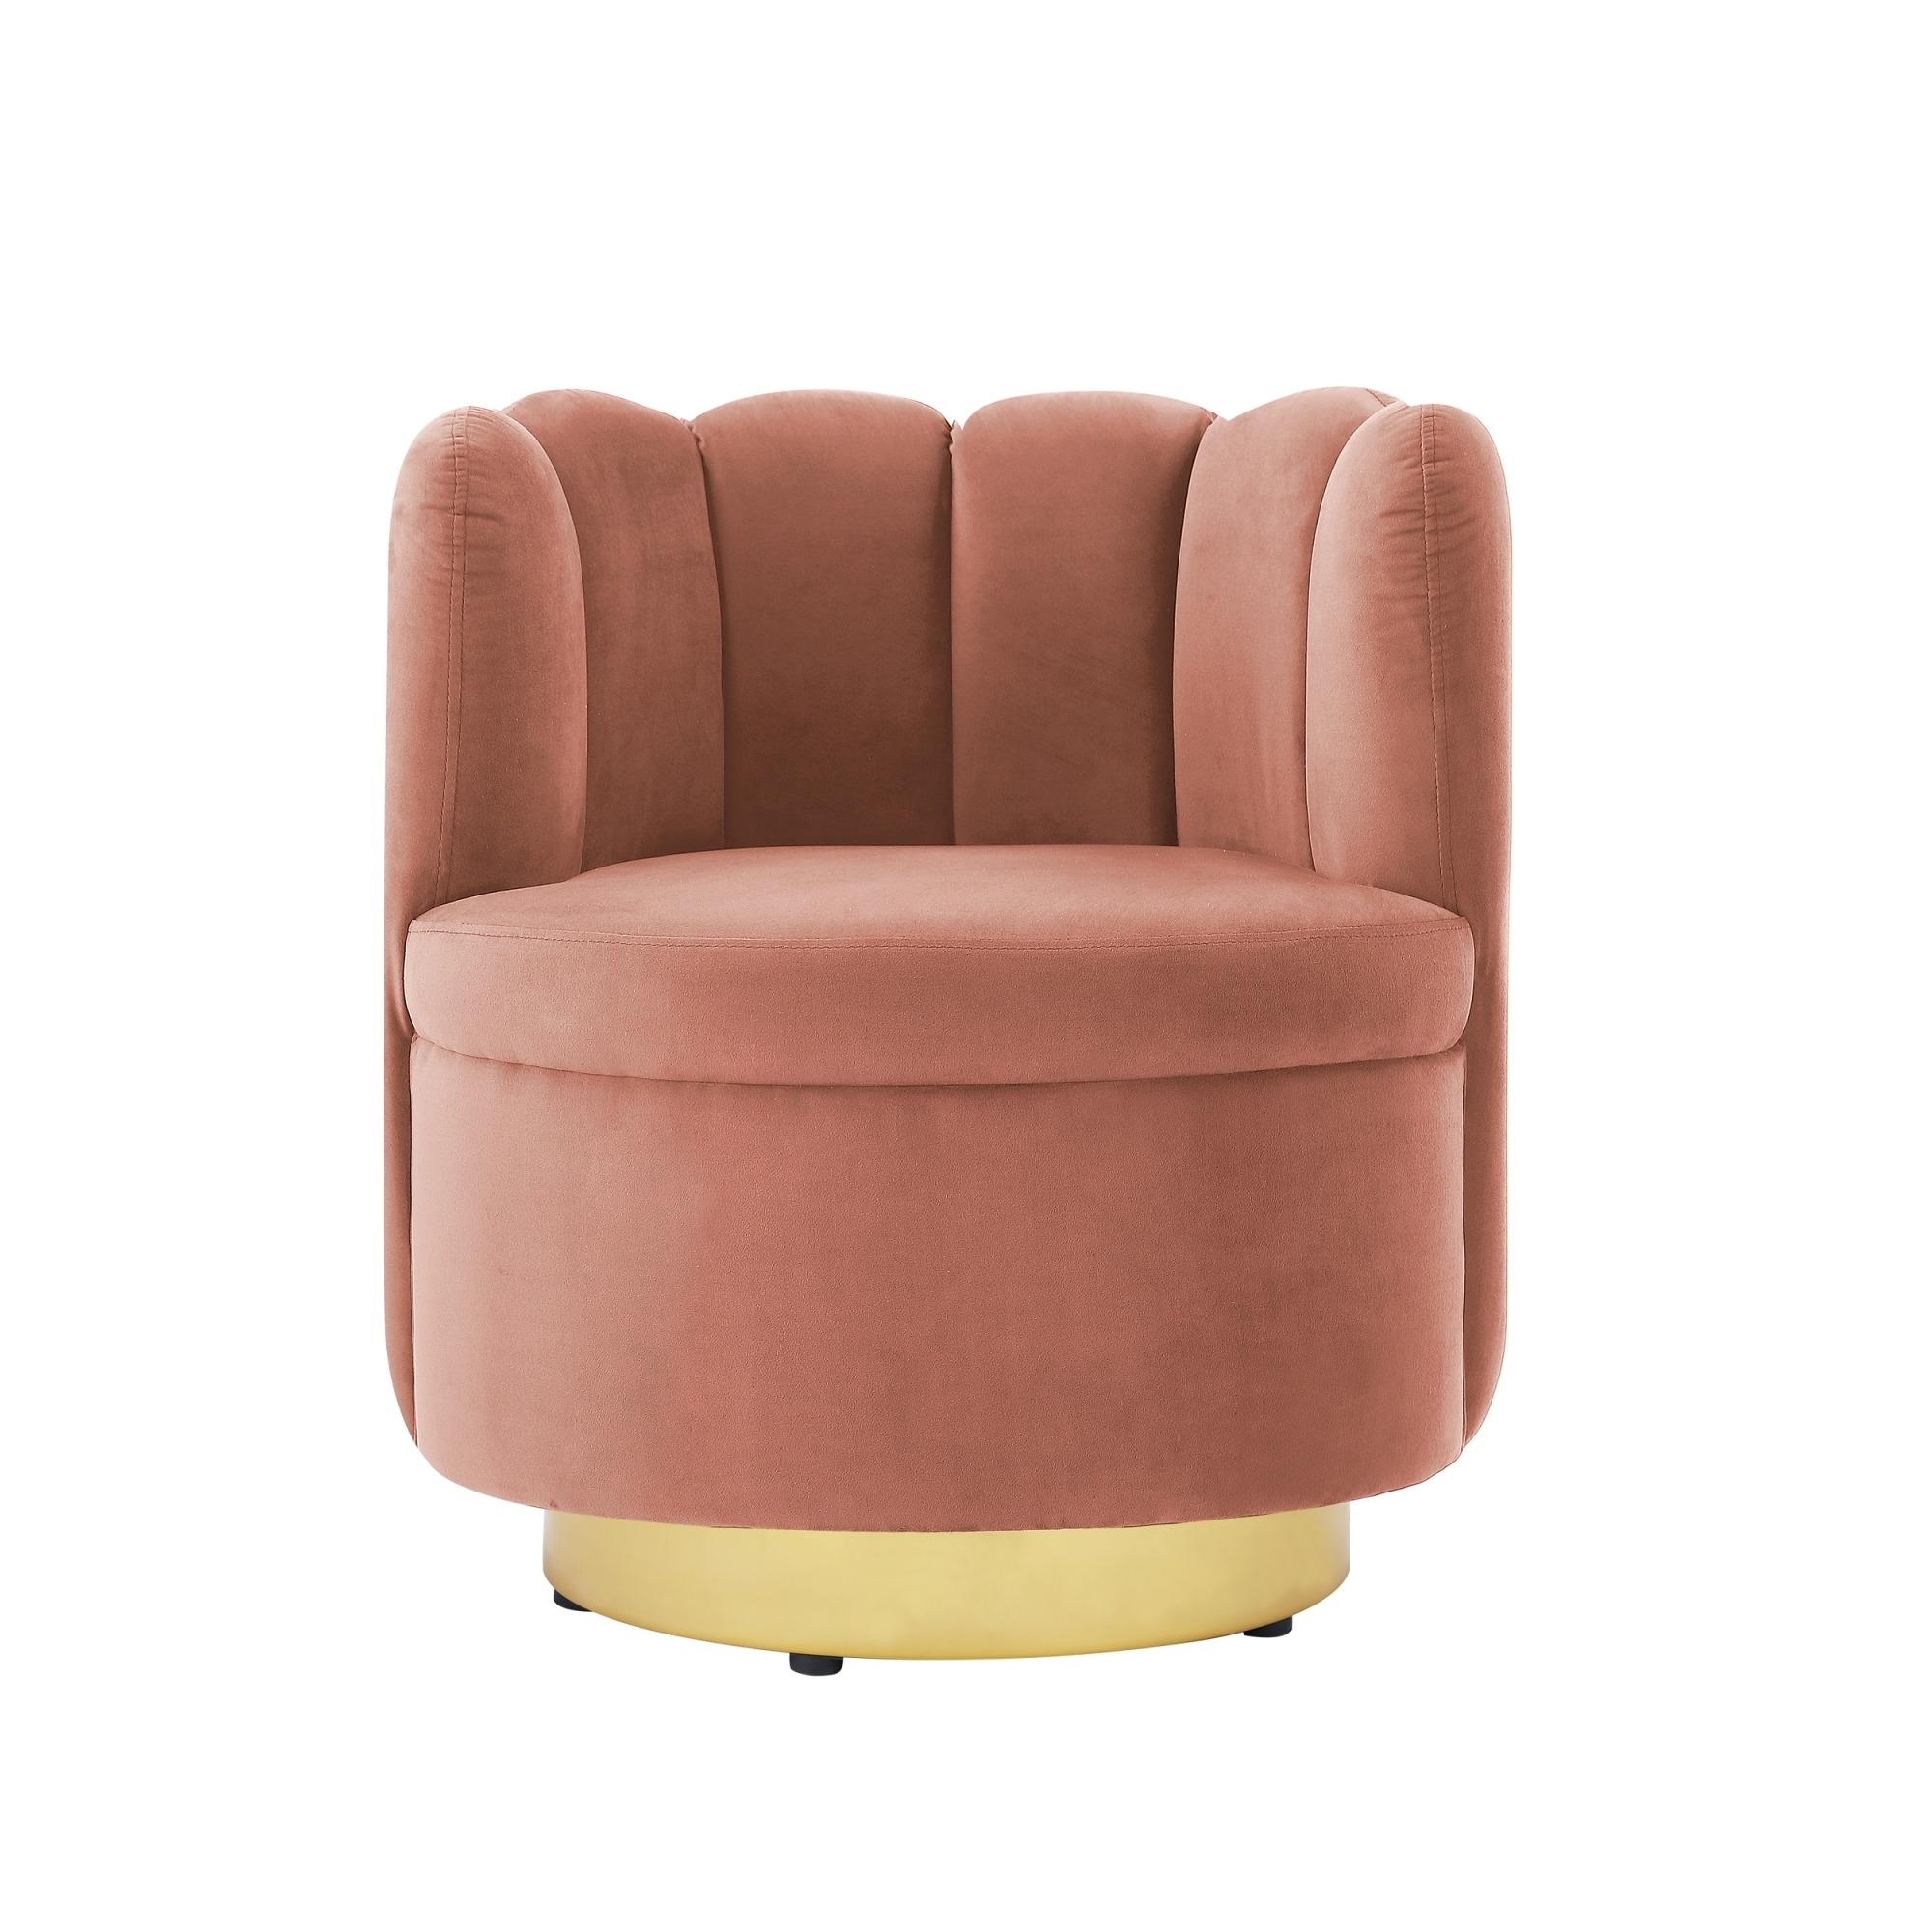 Nicole Miller Flynn Velvet Swivel Accent Chair-Channel Tufted Back-Gold Or Chrome Base - Blush/Gold